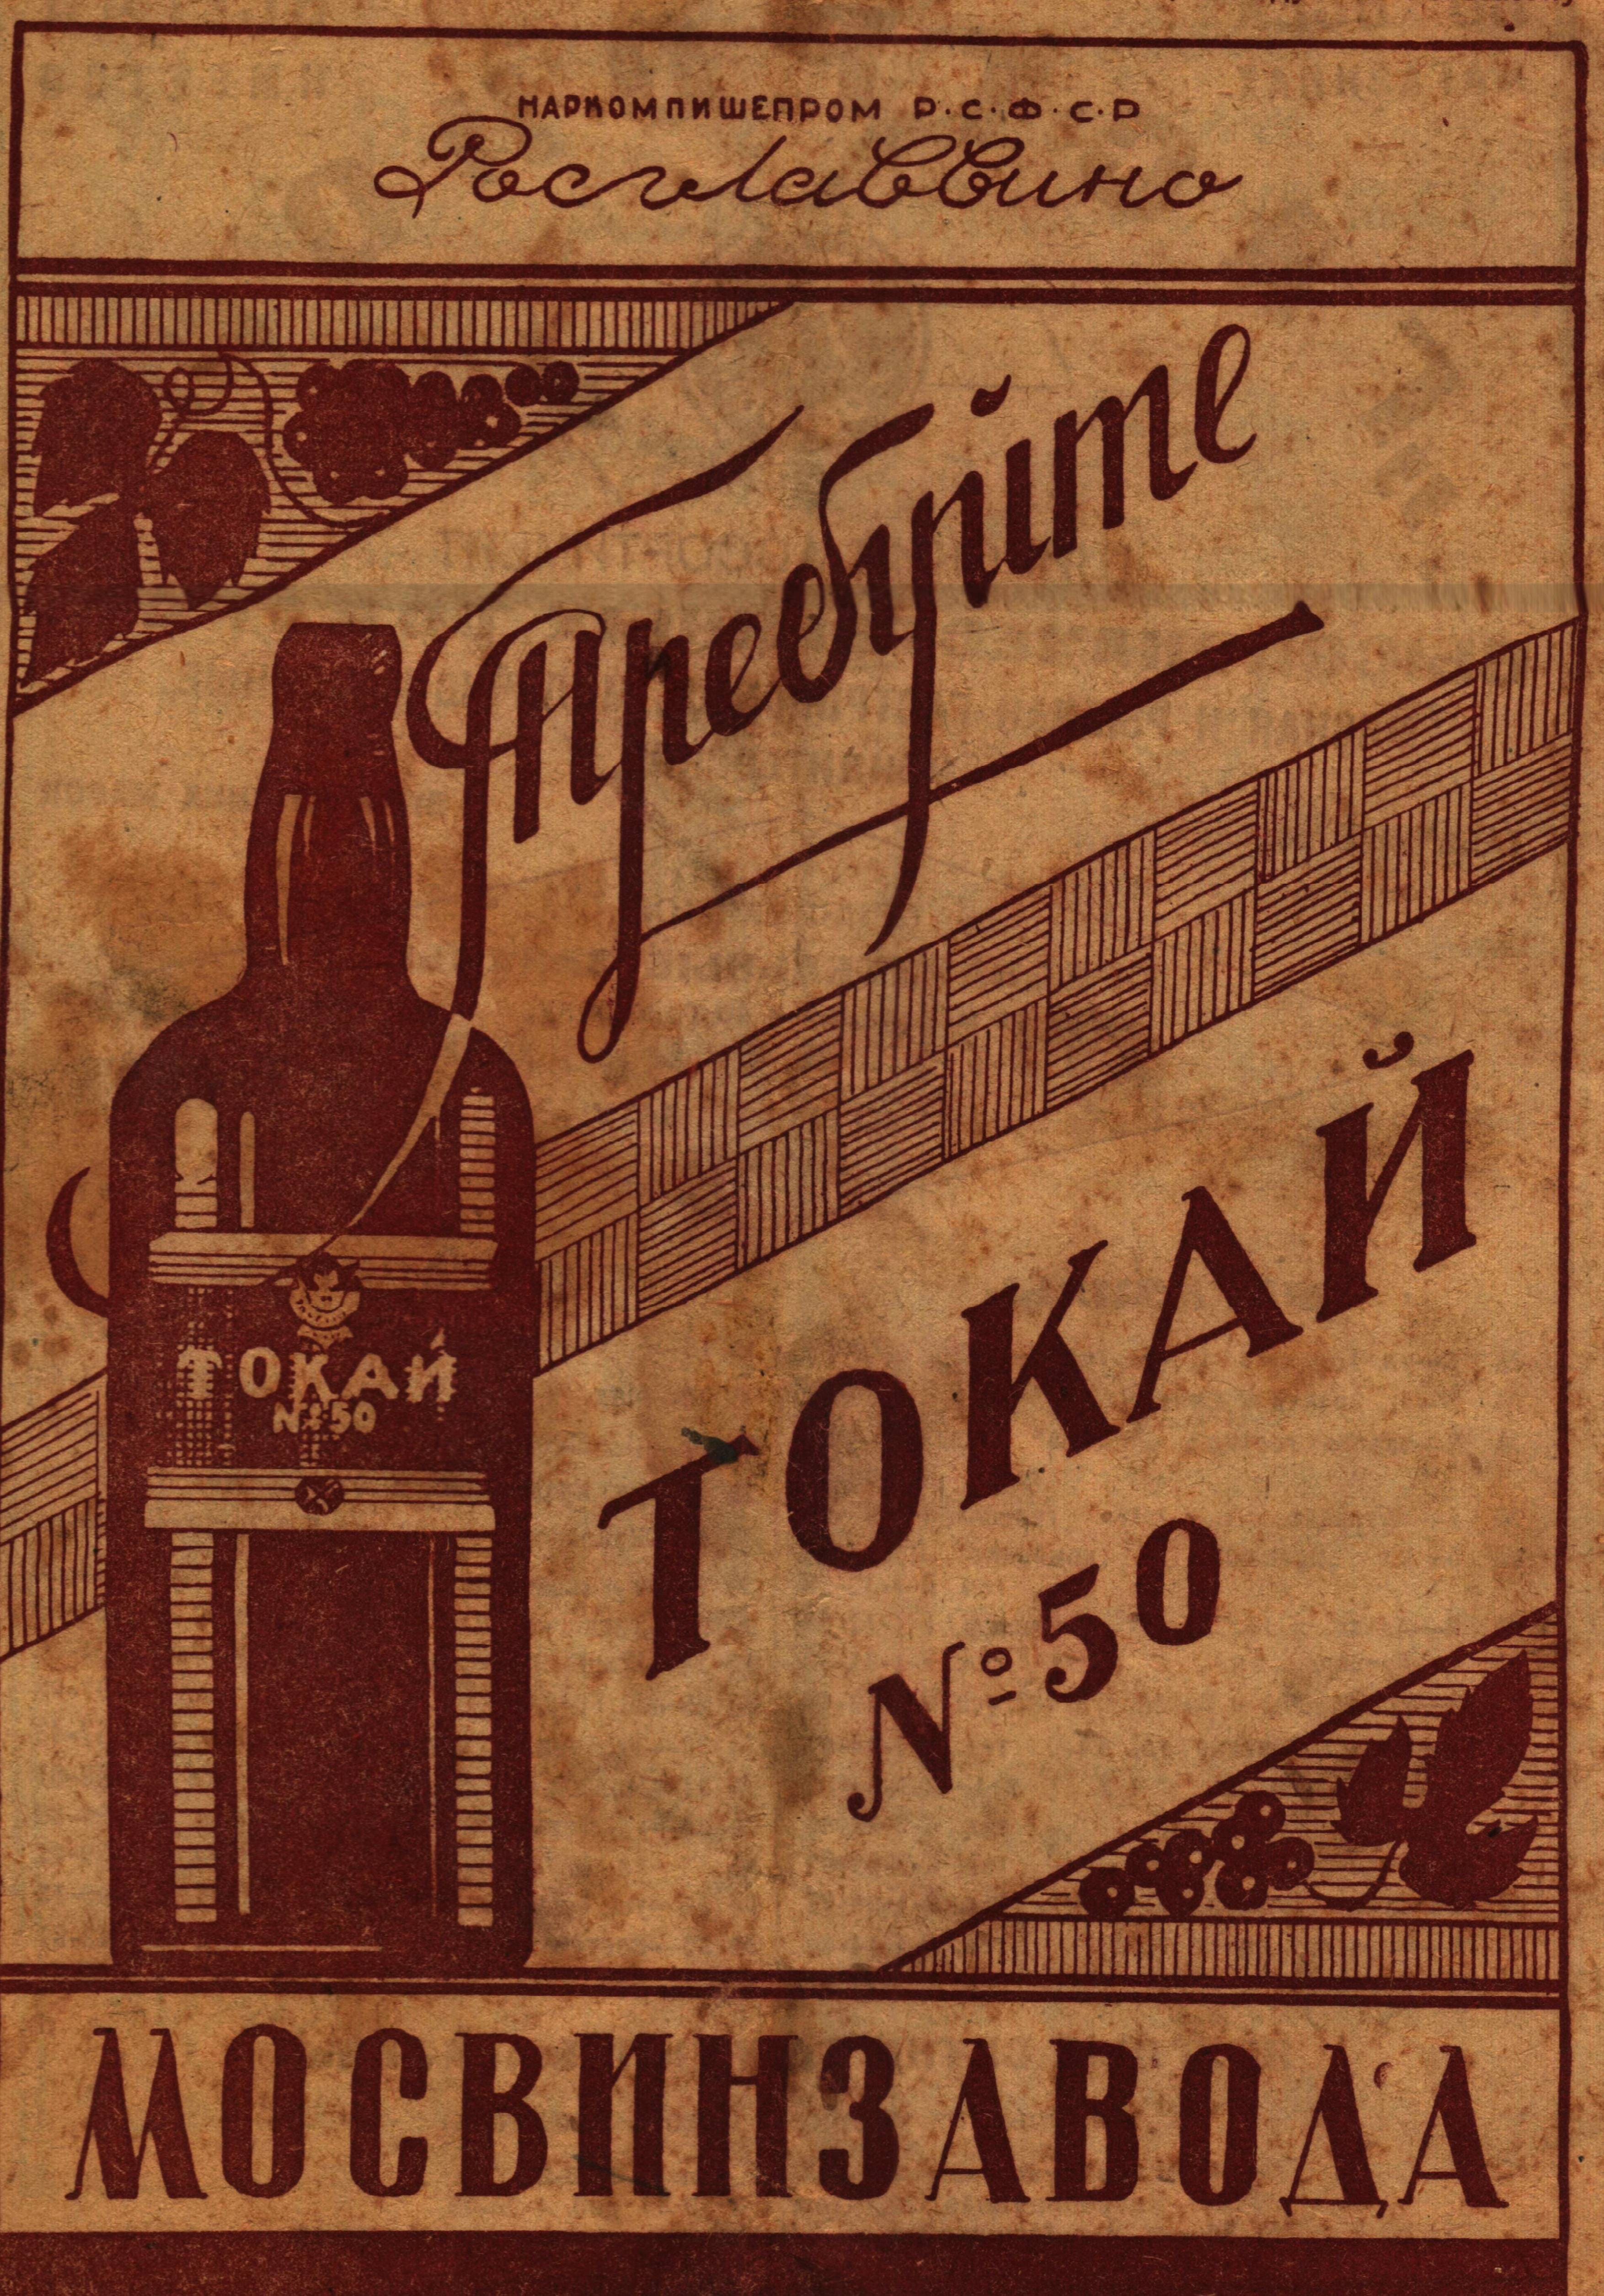 Токай как бренд советского виноделия